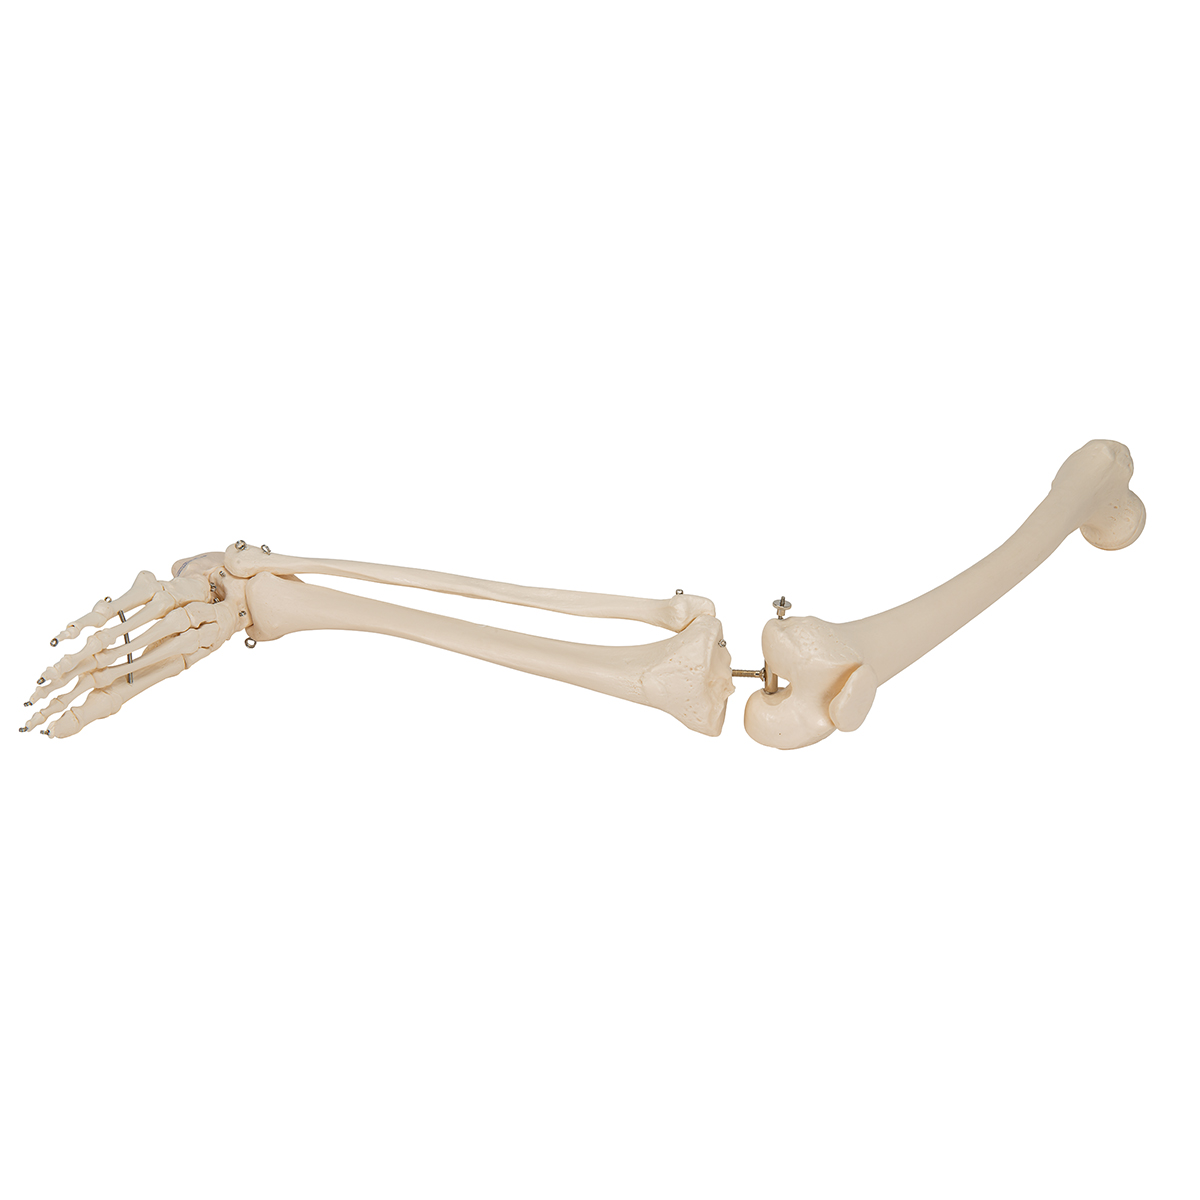 腿骨胳- 3B Smart Anatomy - 1019359 - A35 - 腿和脚骨骼模型- 3B